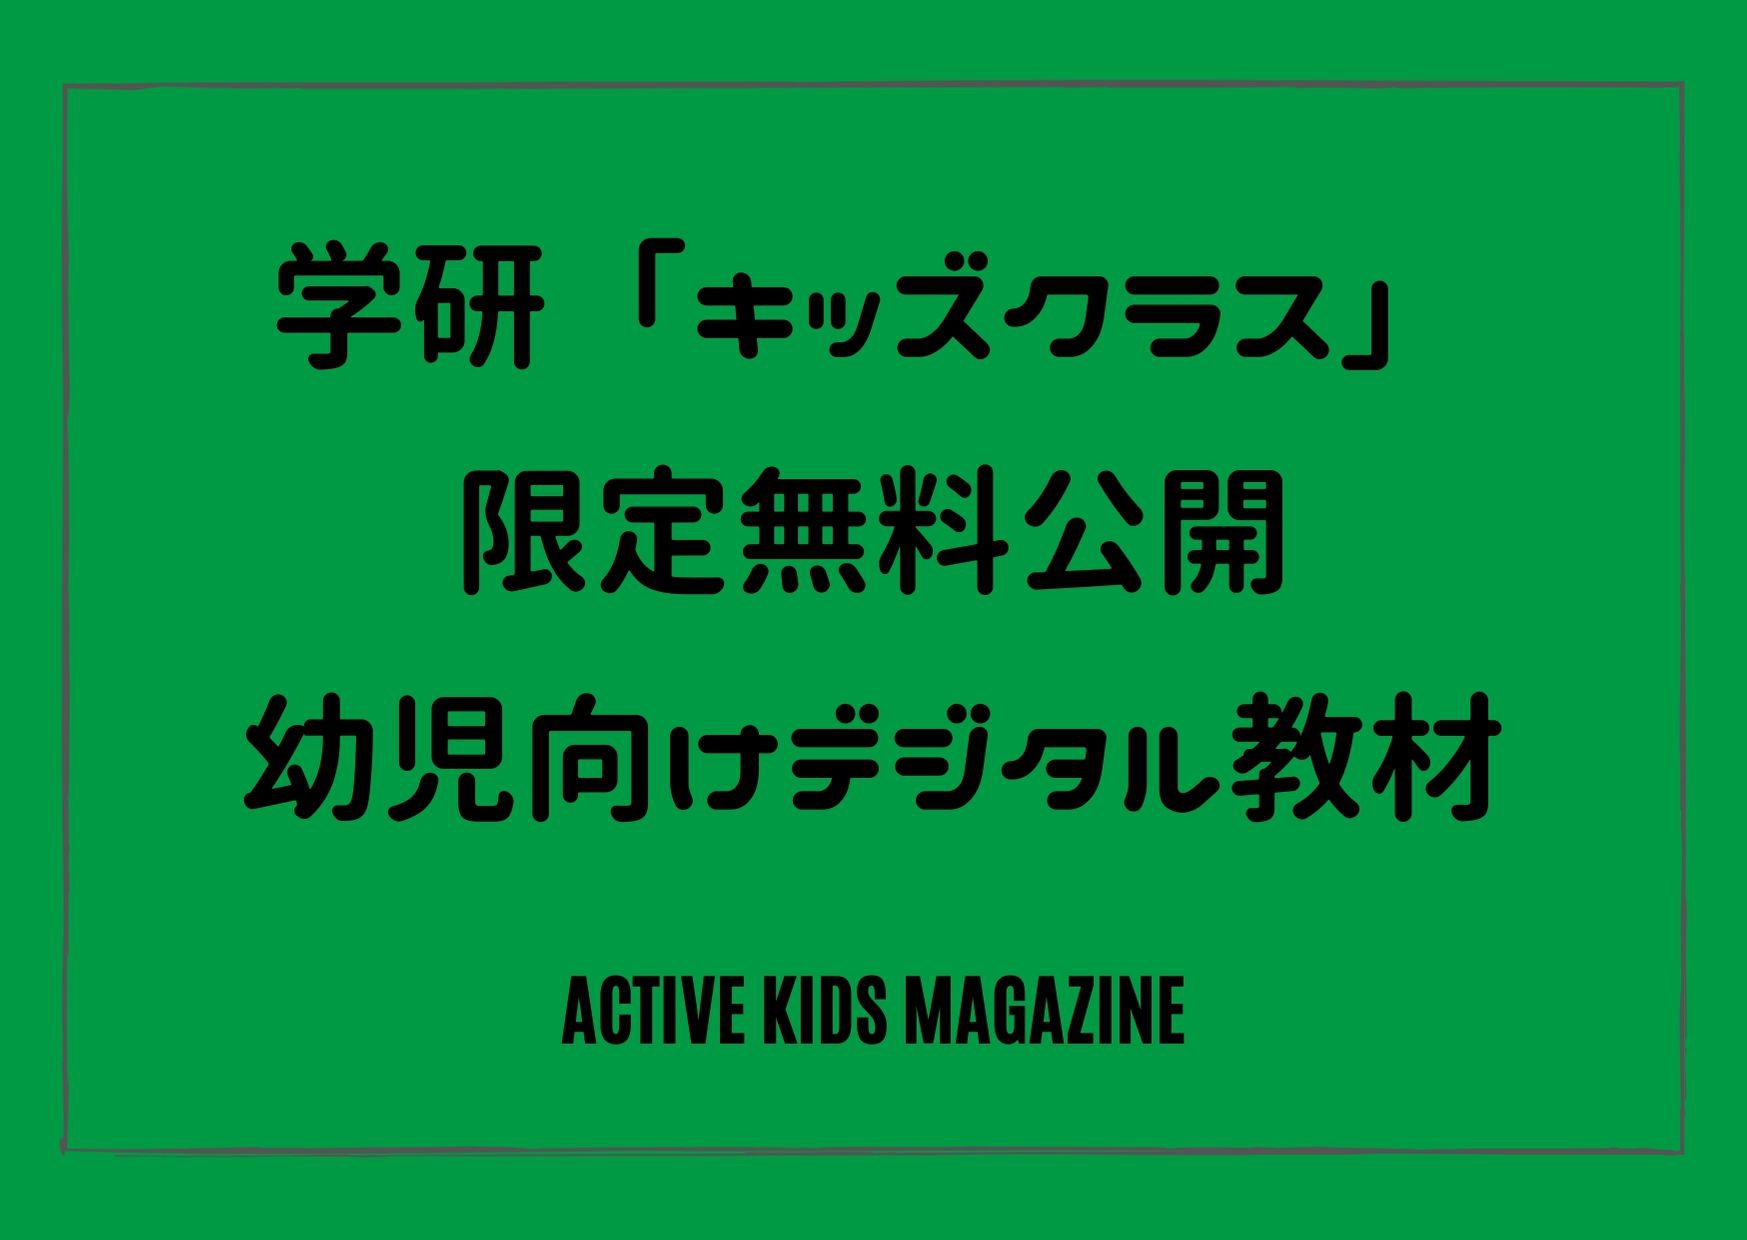 学研 キッズクラス 5月31日まで無料公開 幼児向けデジタル教材で家庭学習応援プロジェクト Active Kids Magazine